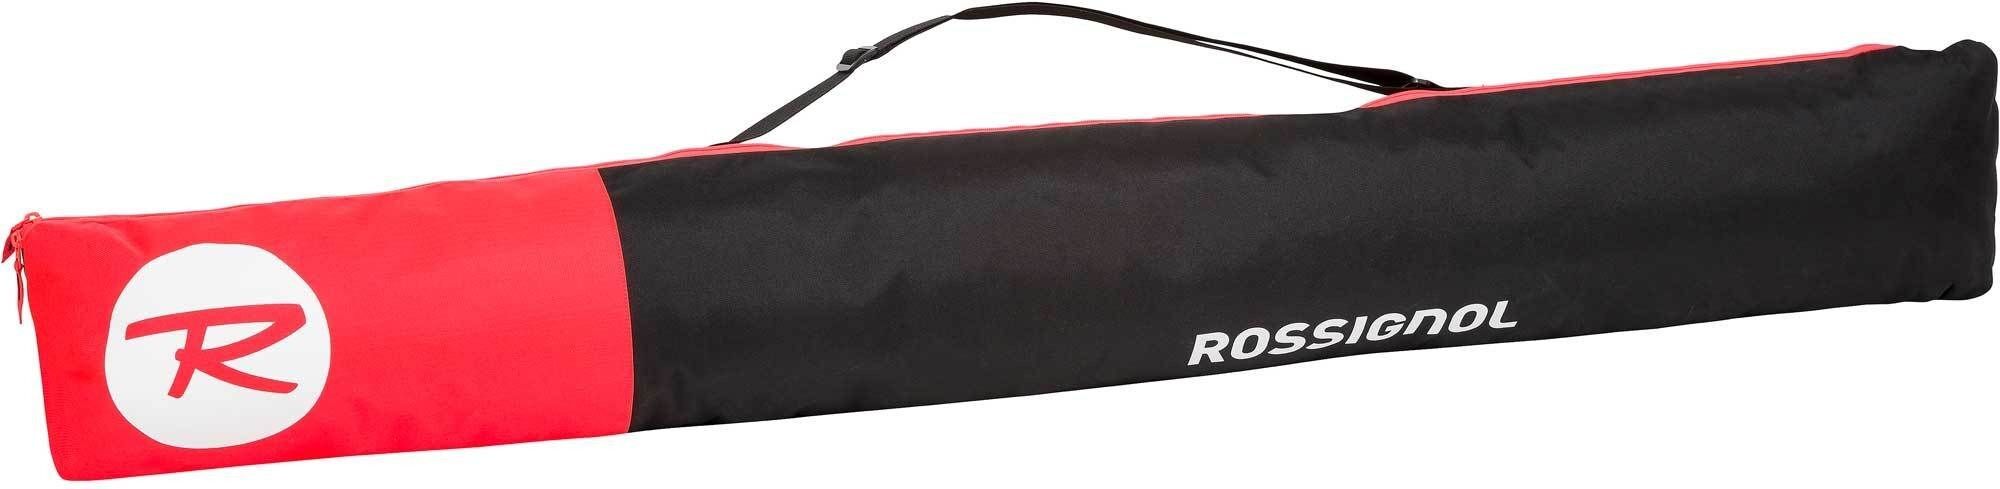 Rossignol Tactic Ski Bag extendable - Skitas